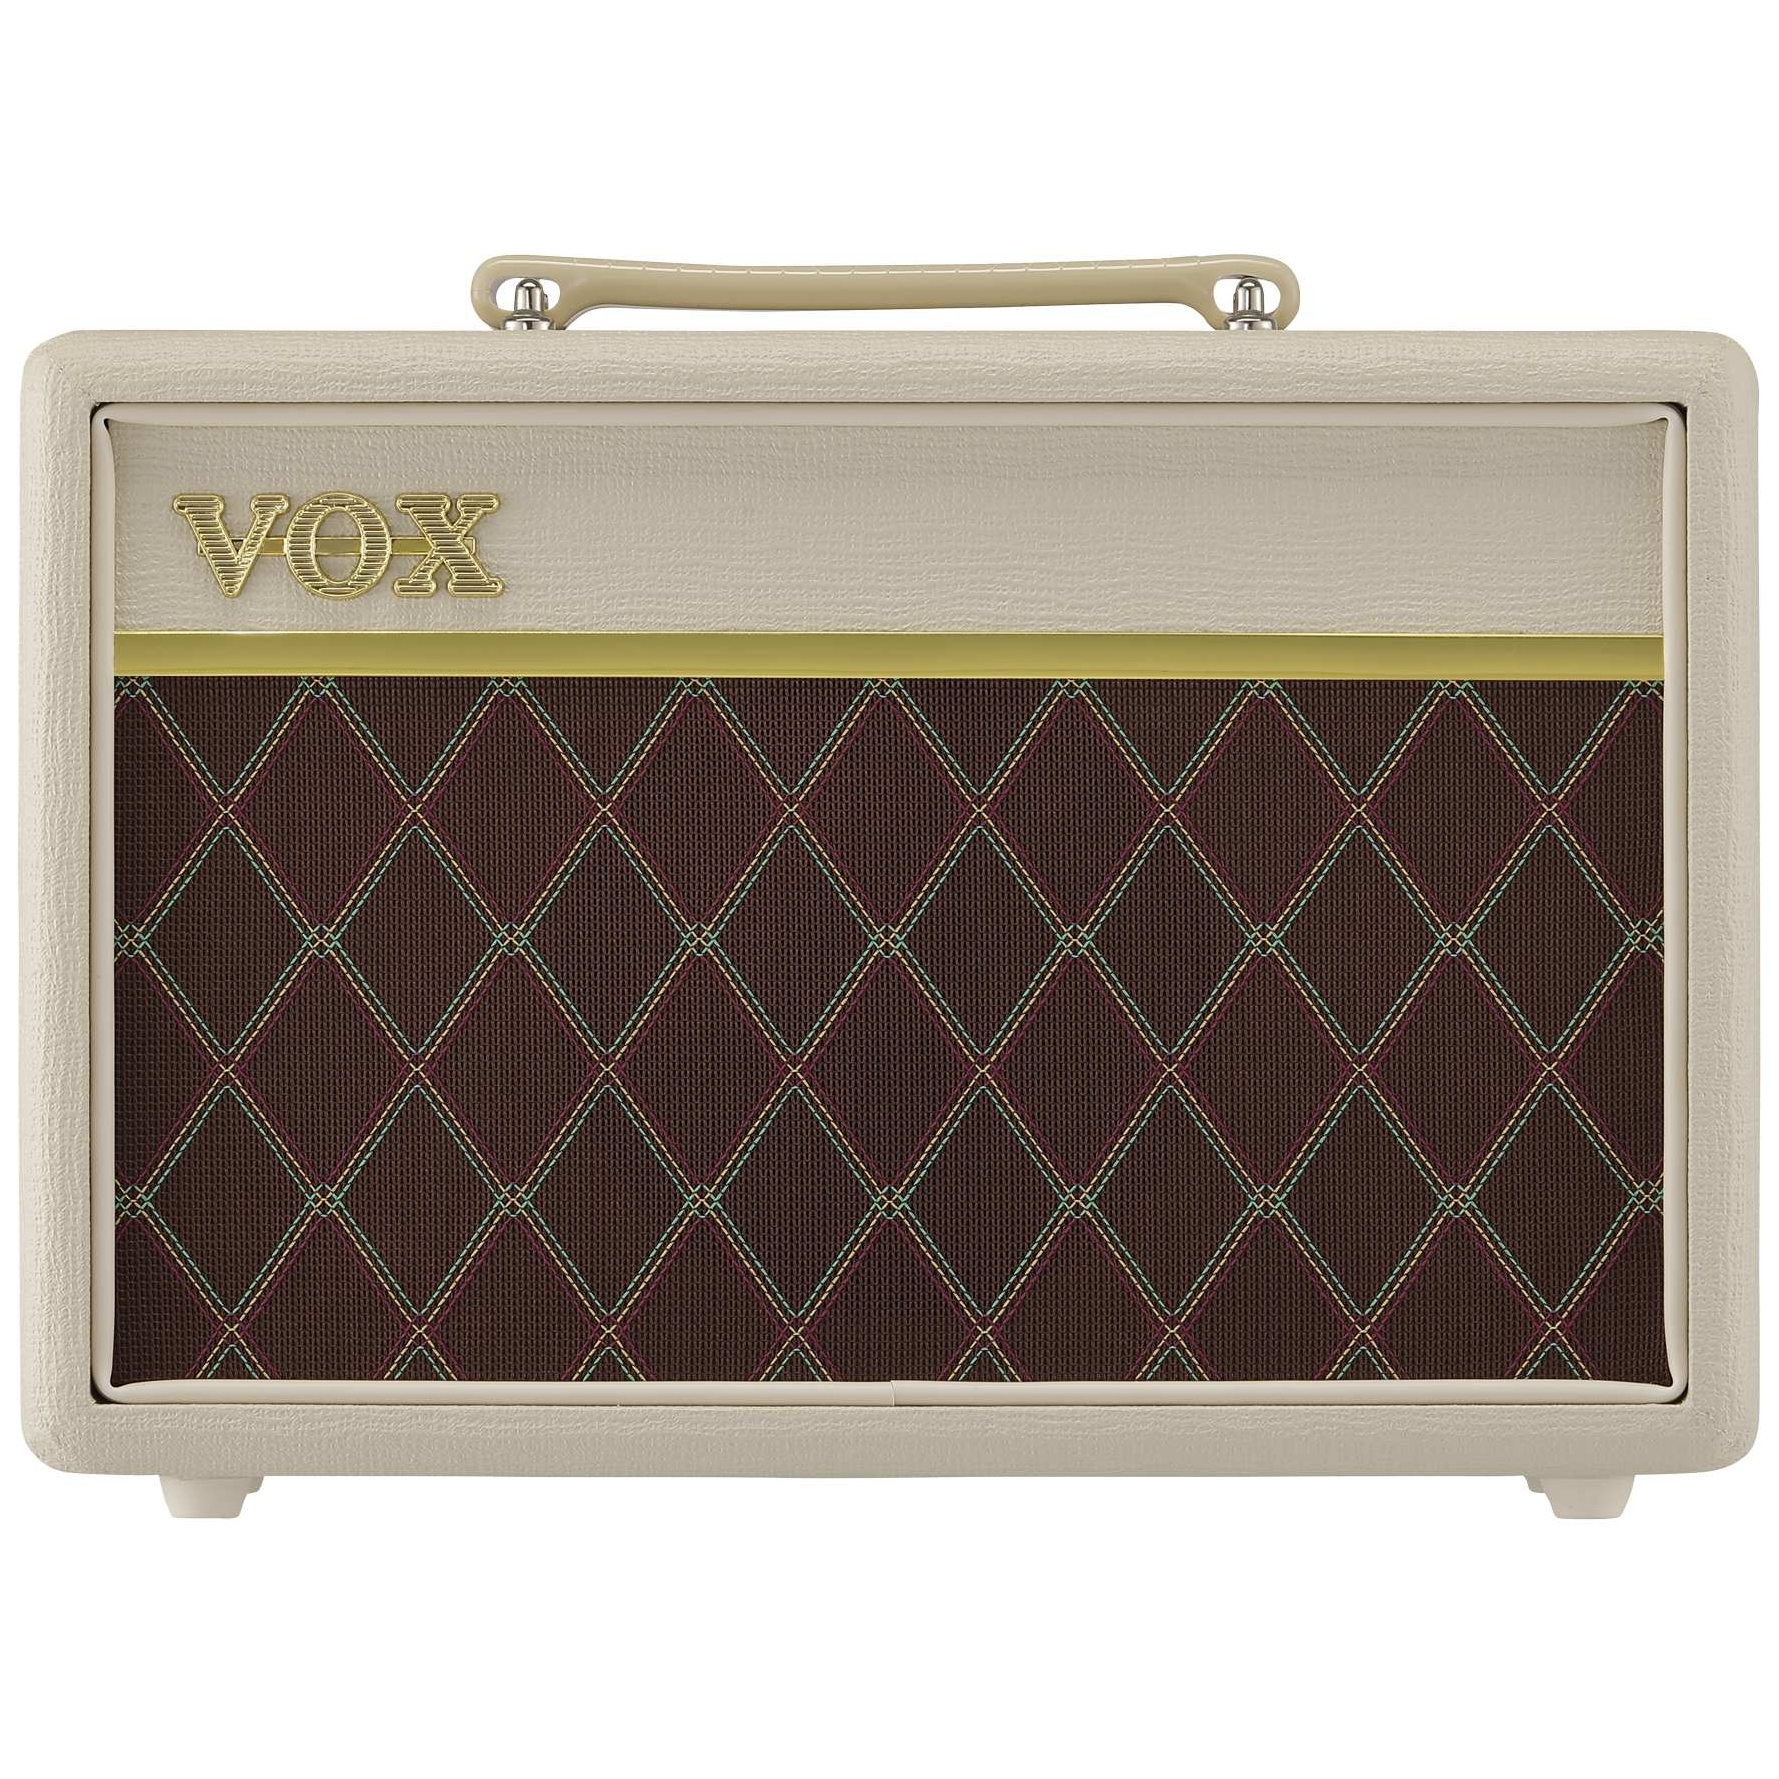 Vox Pathfinder 10 Cream Brown LDT